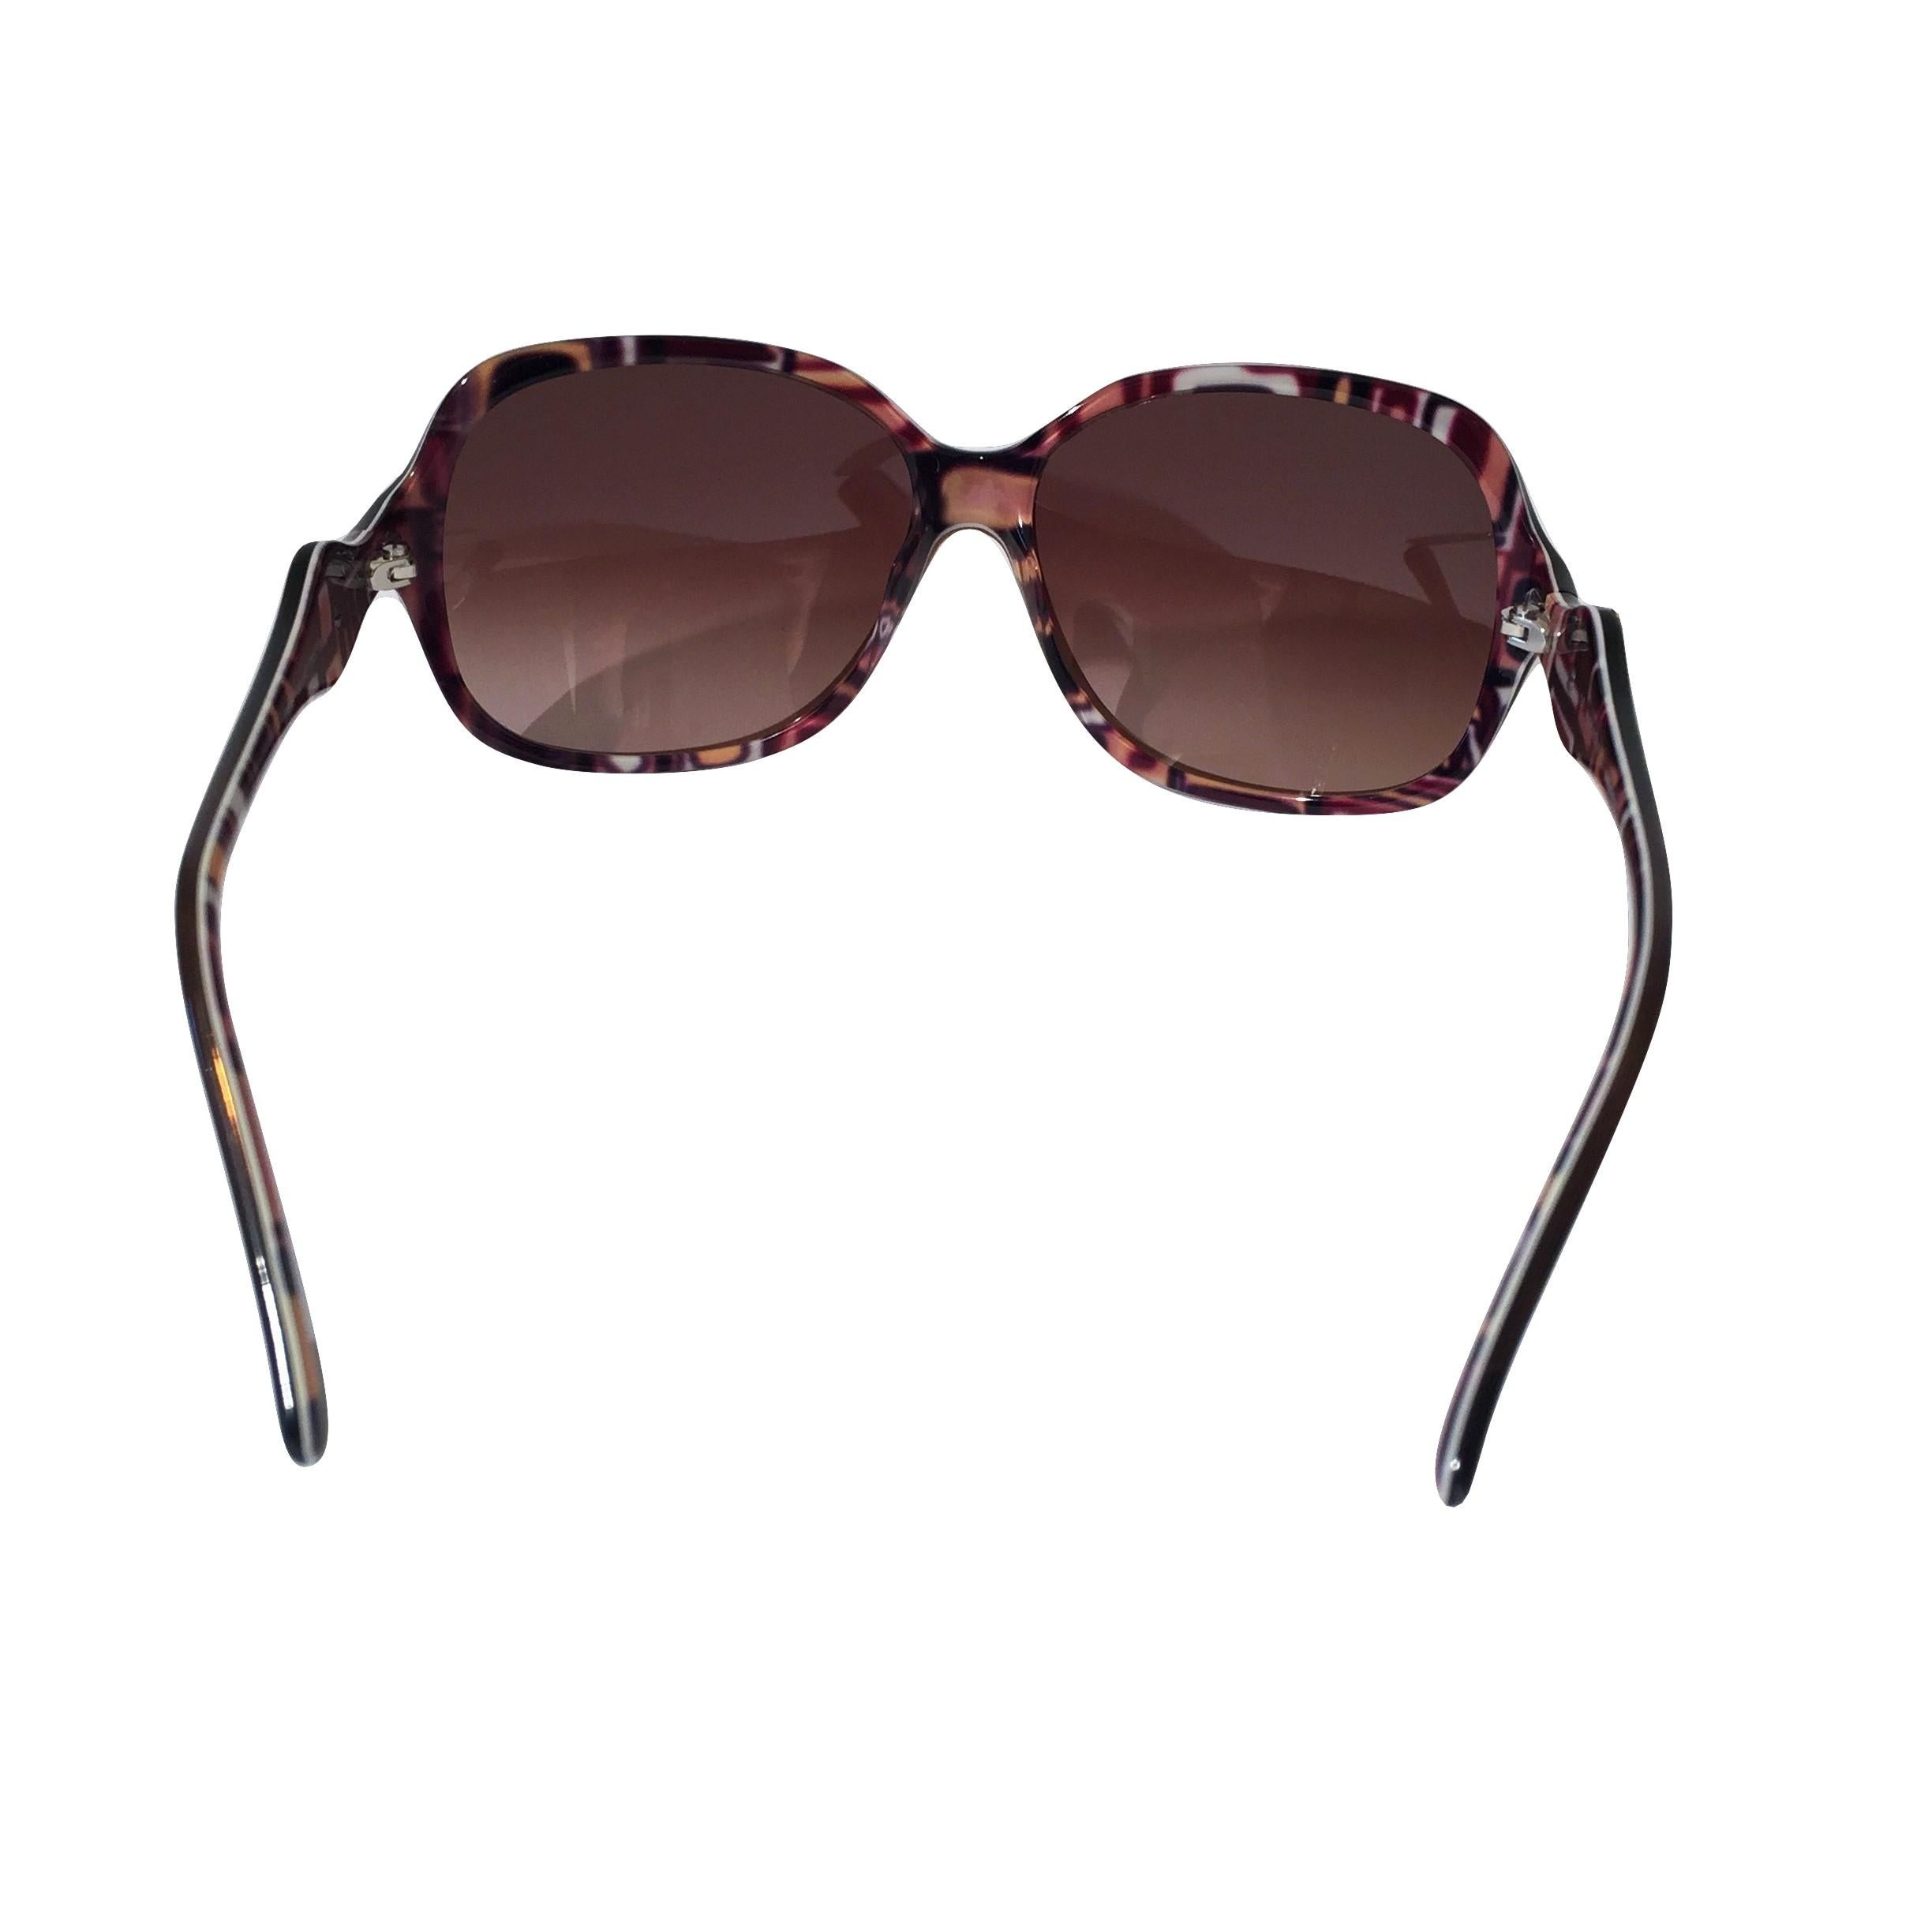 New Emilio Pucci Brown Logo Sunglasses With Case & Box 1